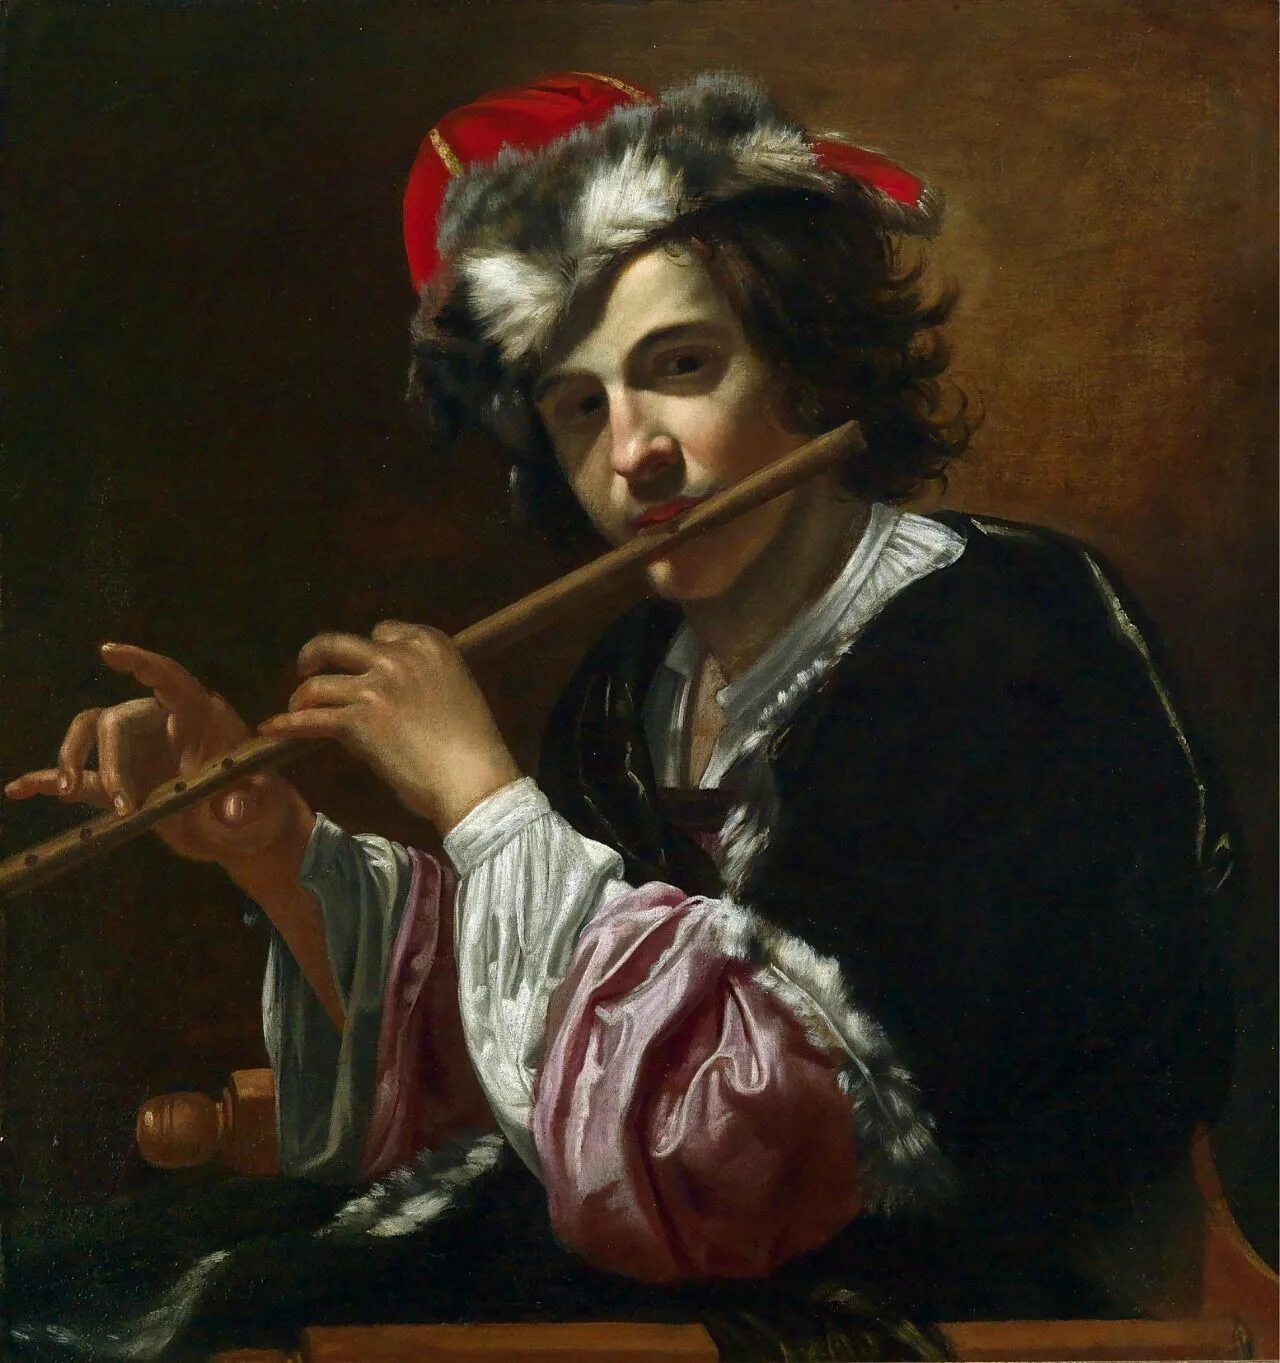 Играющий на флейте. Хендрик Тербрюгген флейтист. Мане флейтист картина. Тербрюгген флейтист картина. Хендрик Тербрюгген концерт.